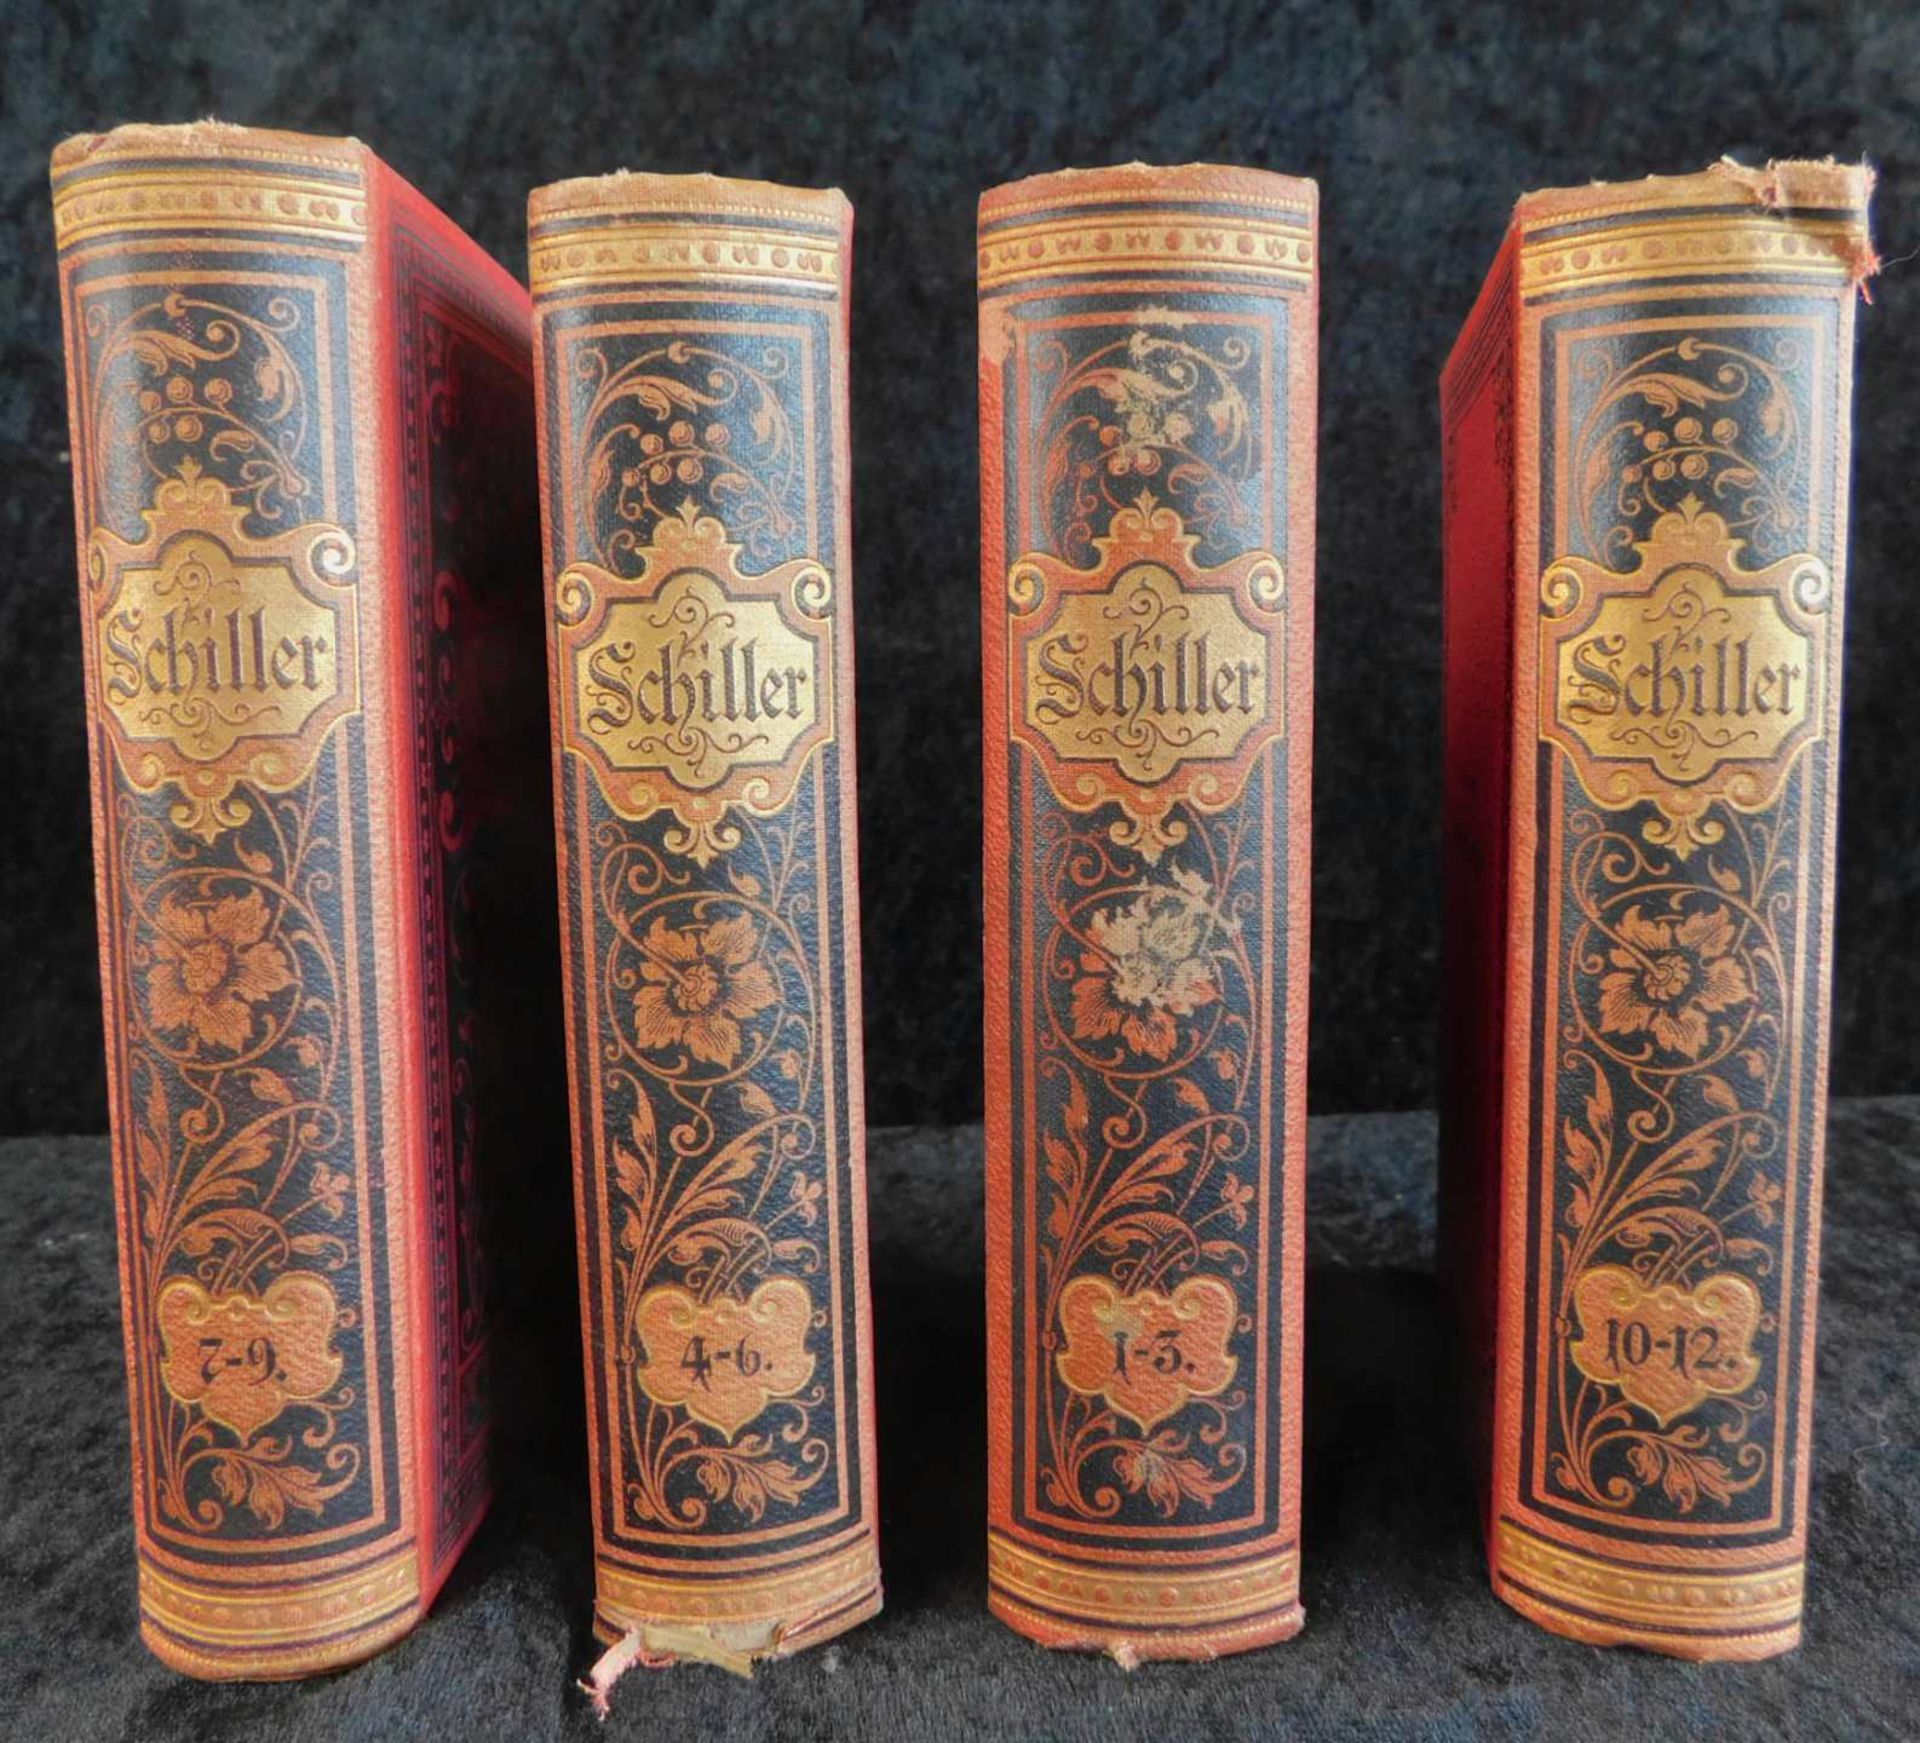 Schiller, "Schillers sämtliche Werke", alle 12 in 4 Bänden, Druck und Verlag Philipp Reclam ju